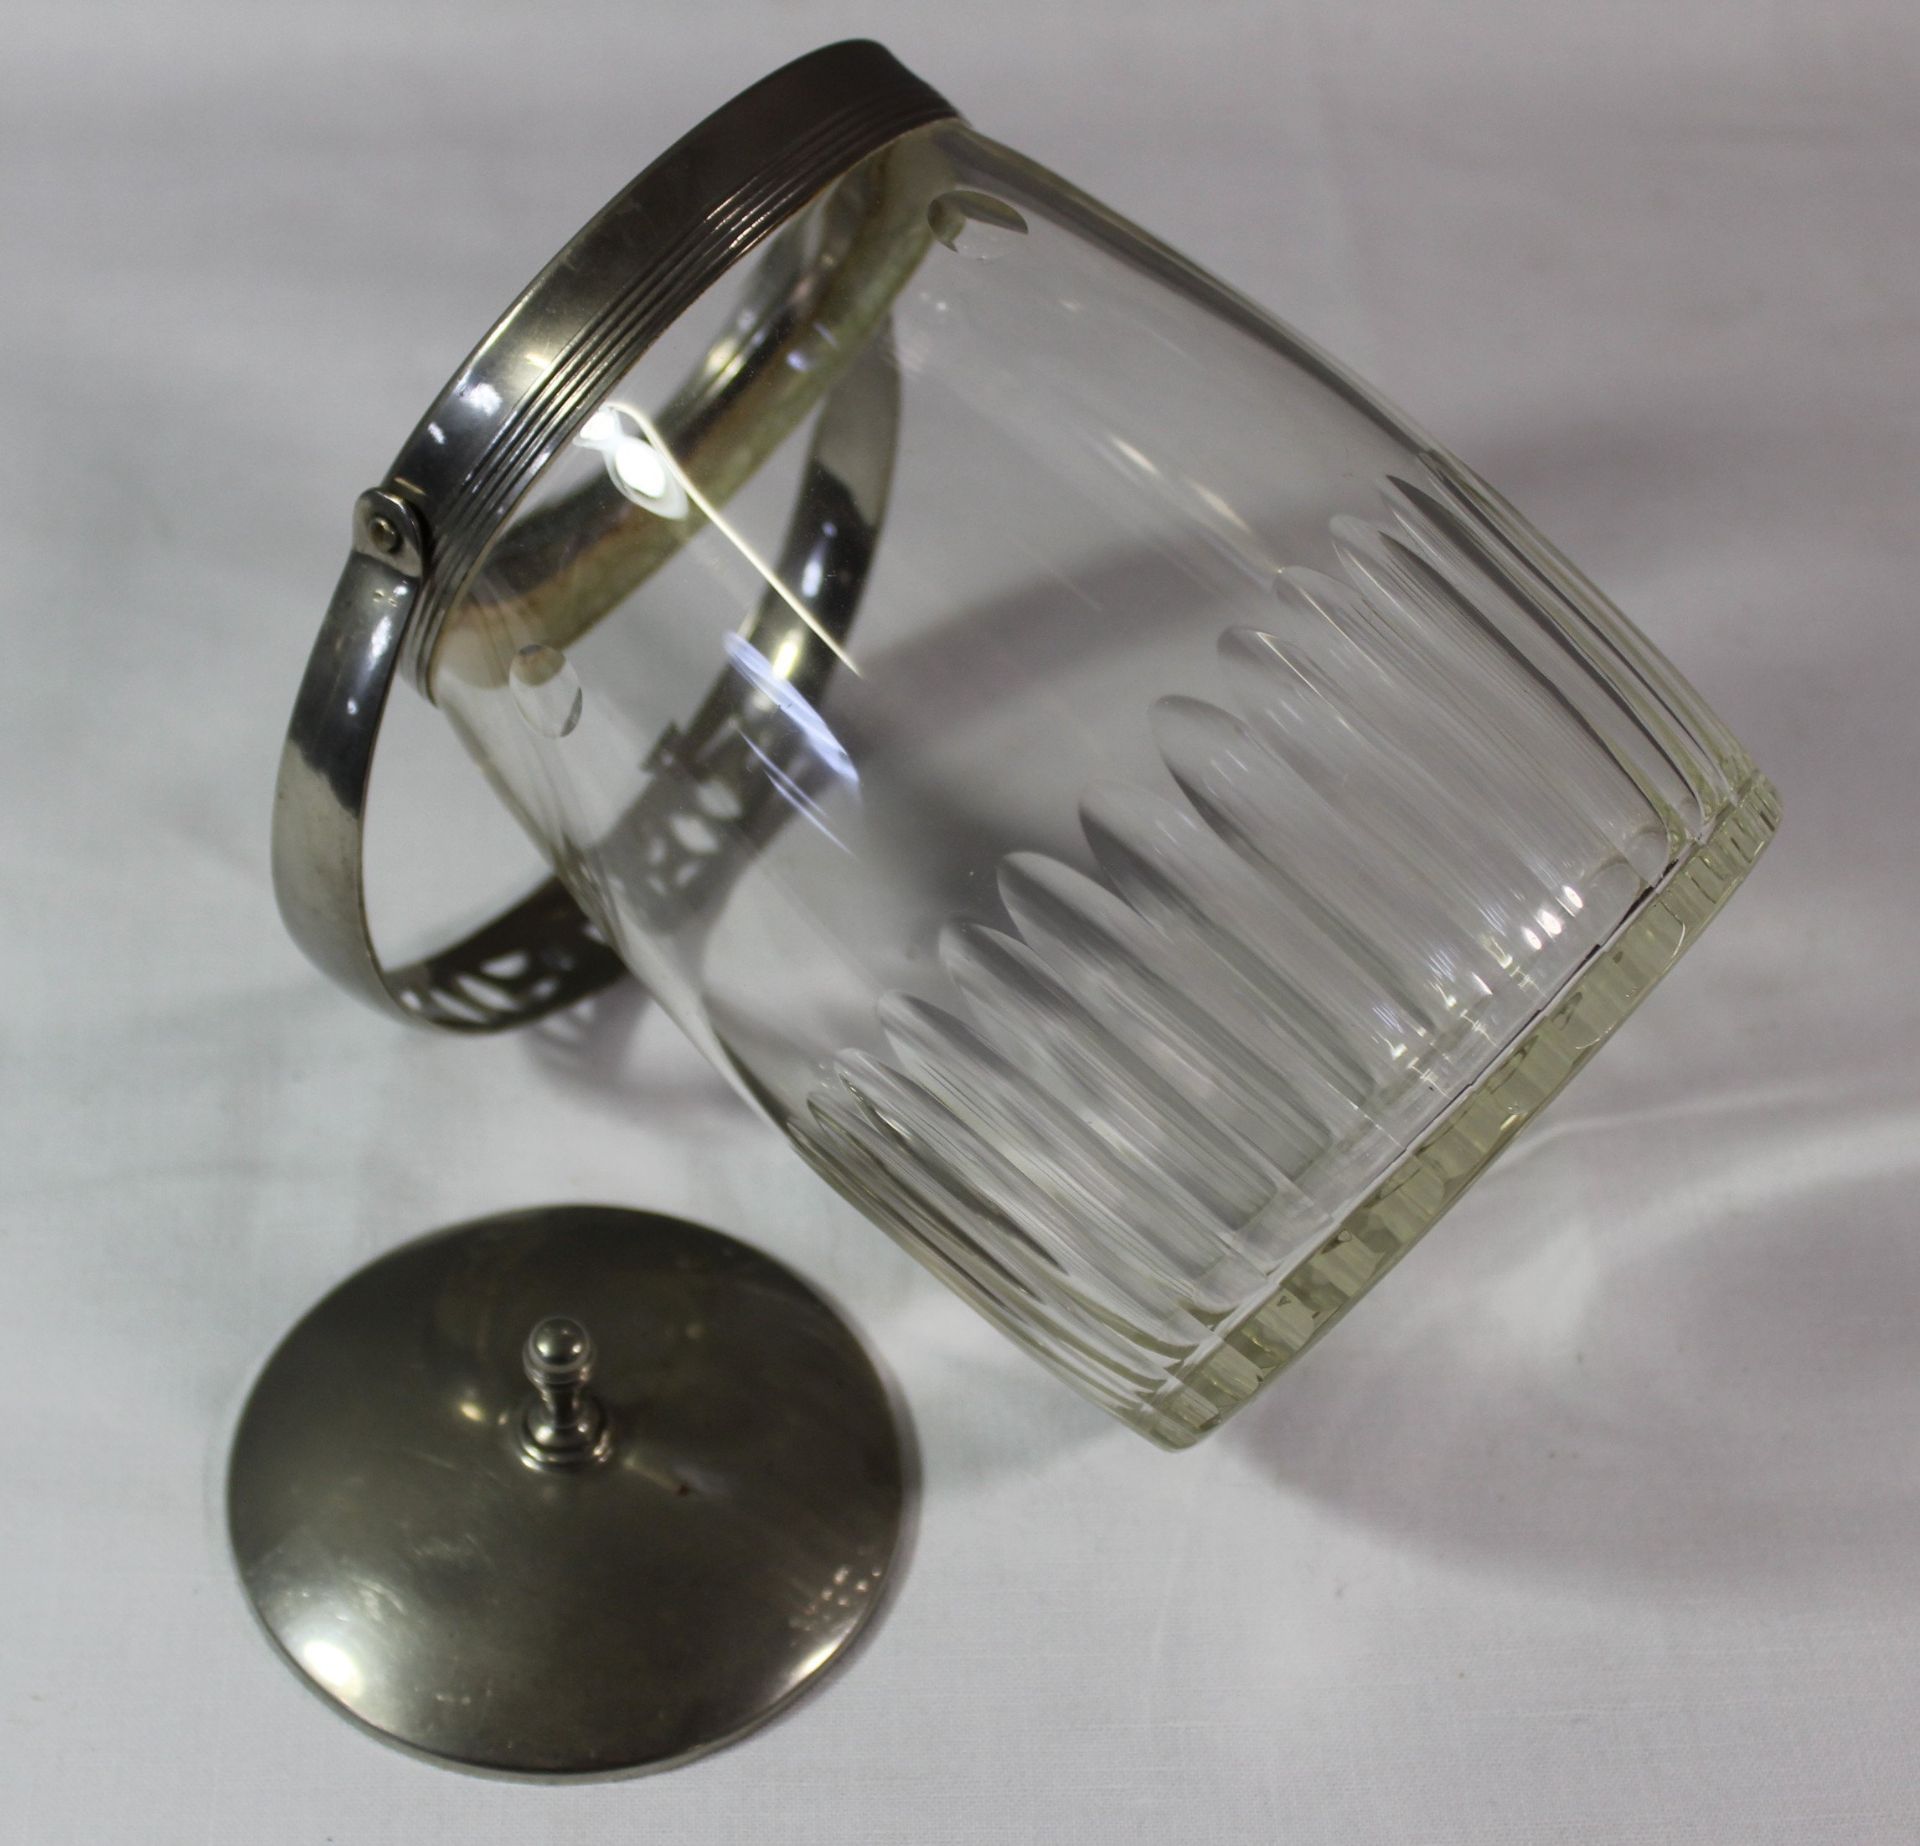 Keksdose, Kristall beschliffen, Metzallmontur, wohl 20er Jahre, ca. H-18cm. - Bild 5 aus 5